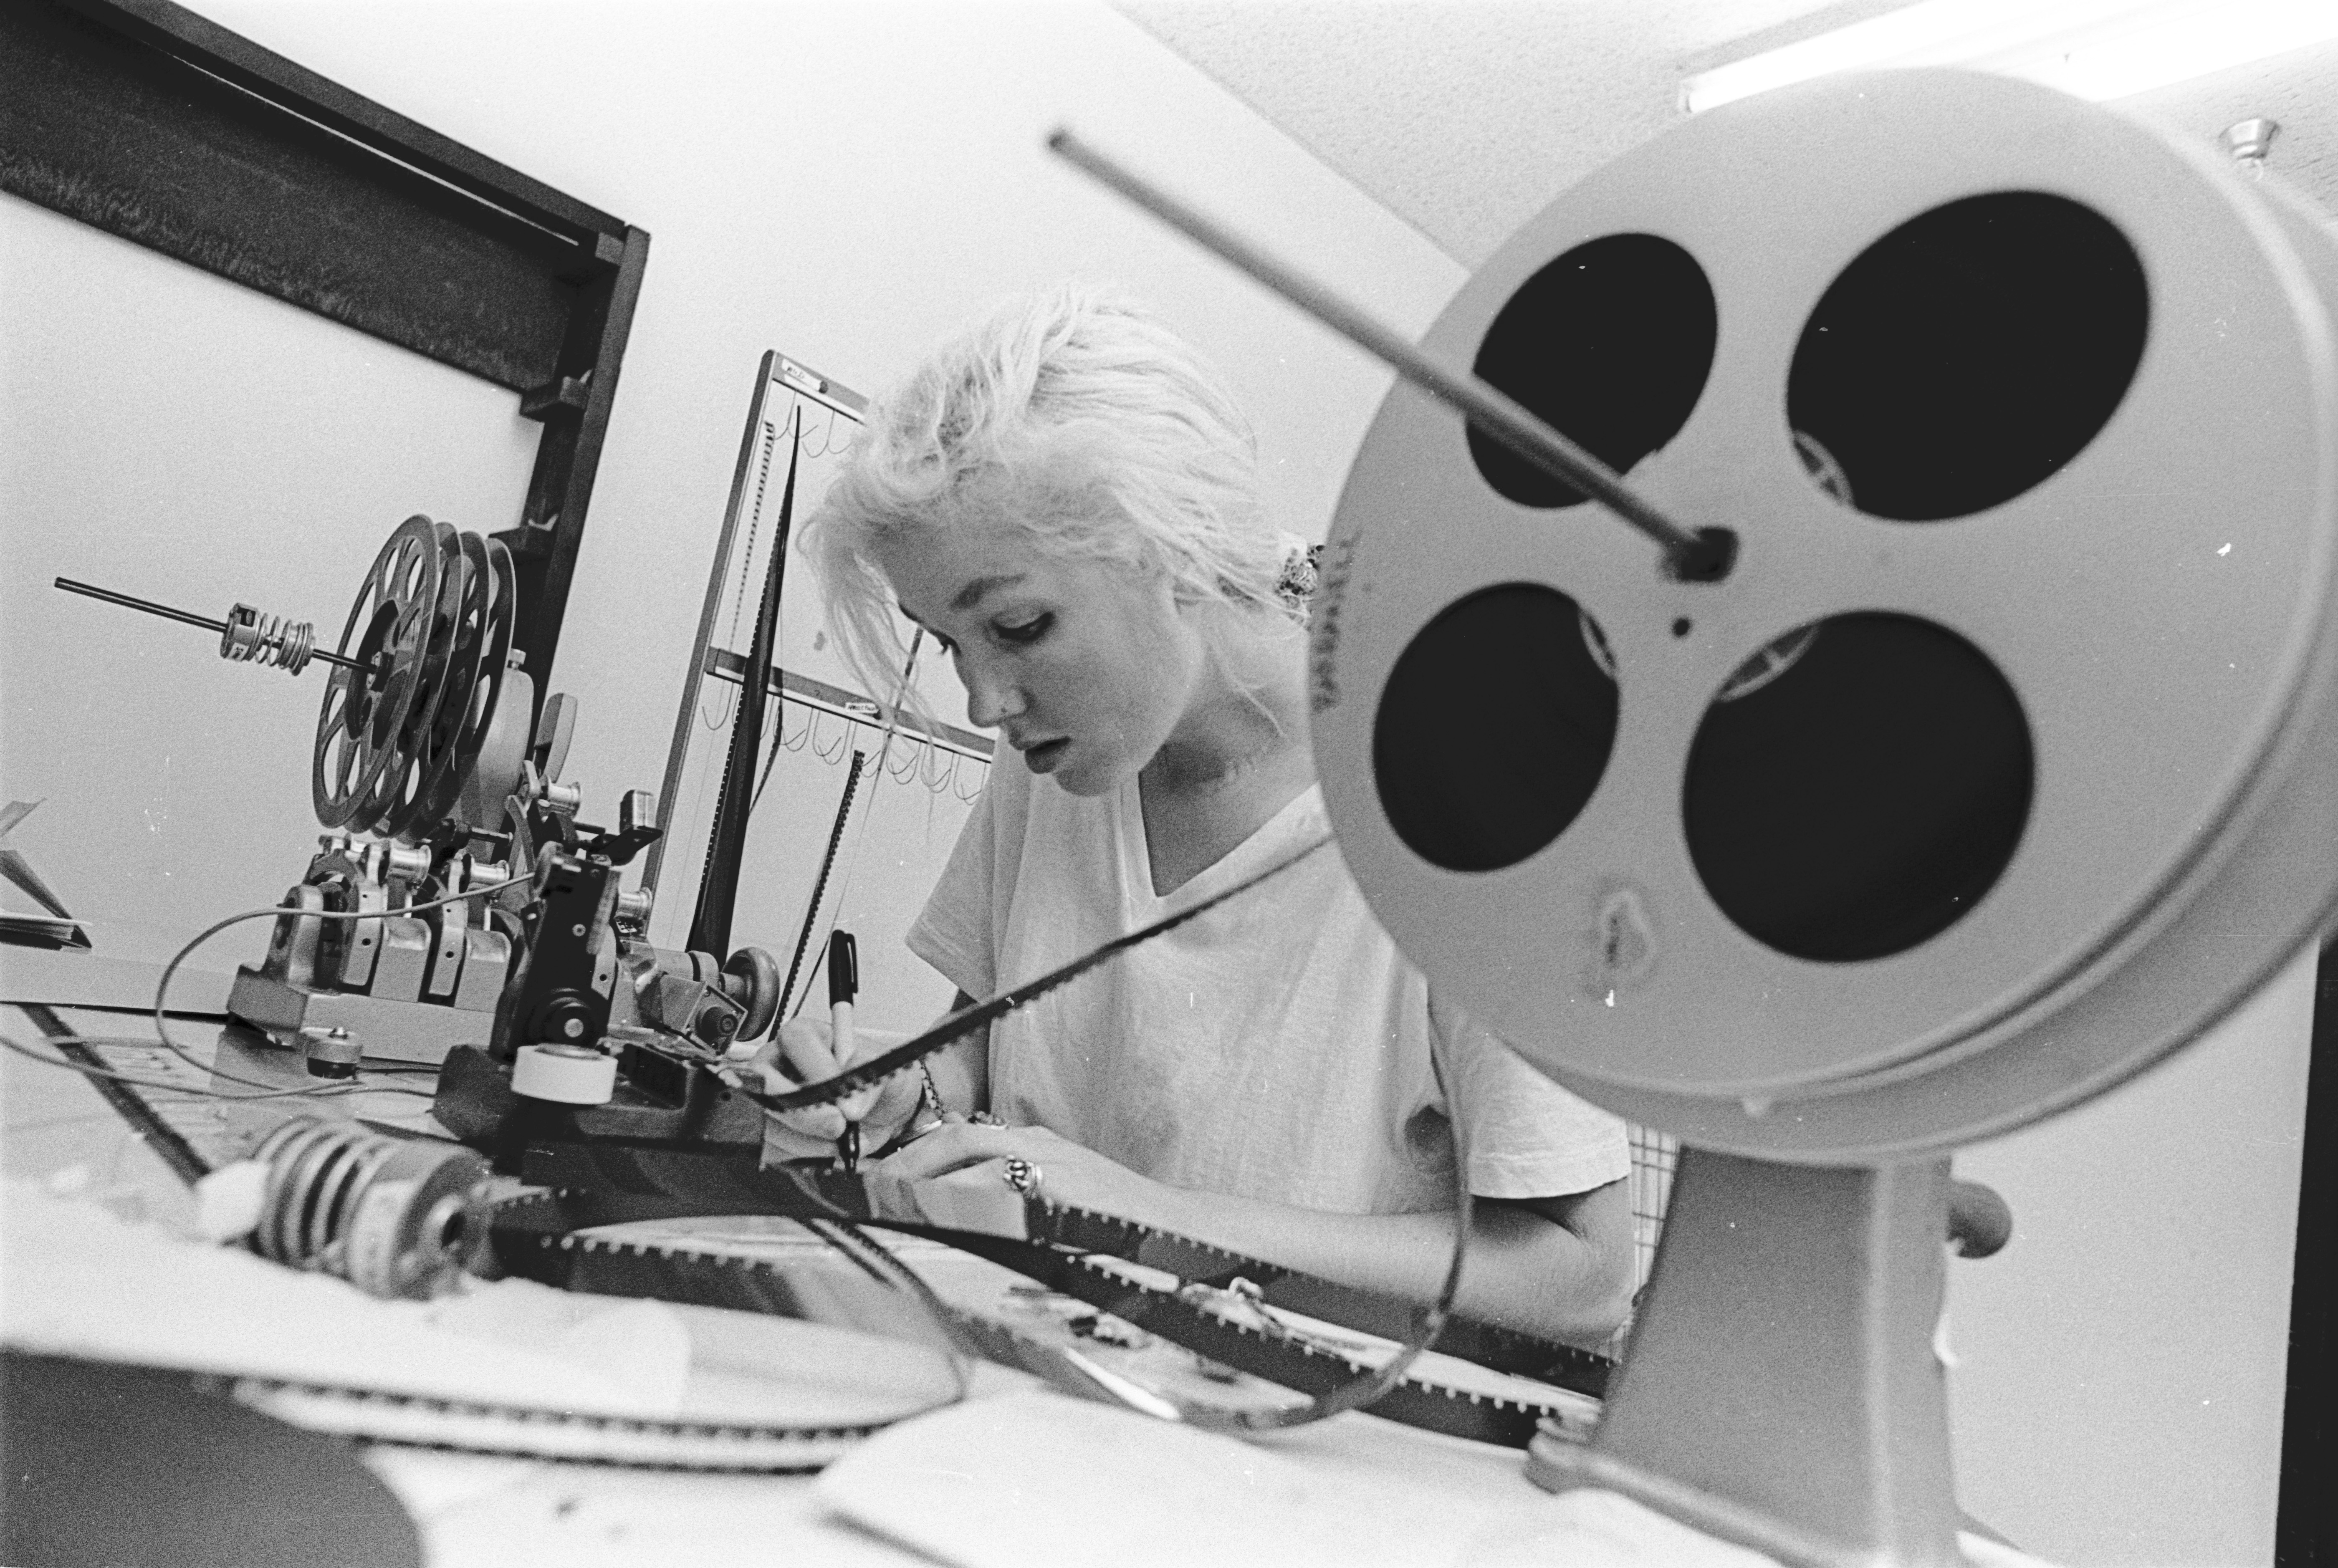 Chris Innis, film editor, while attending CalArts (California Institute of the Arts) film school. CalArts archives.